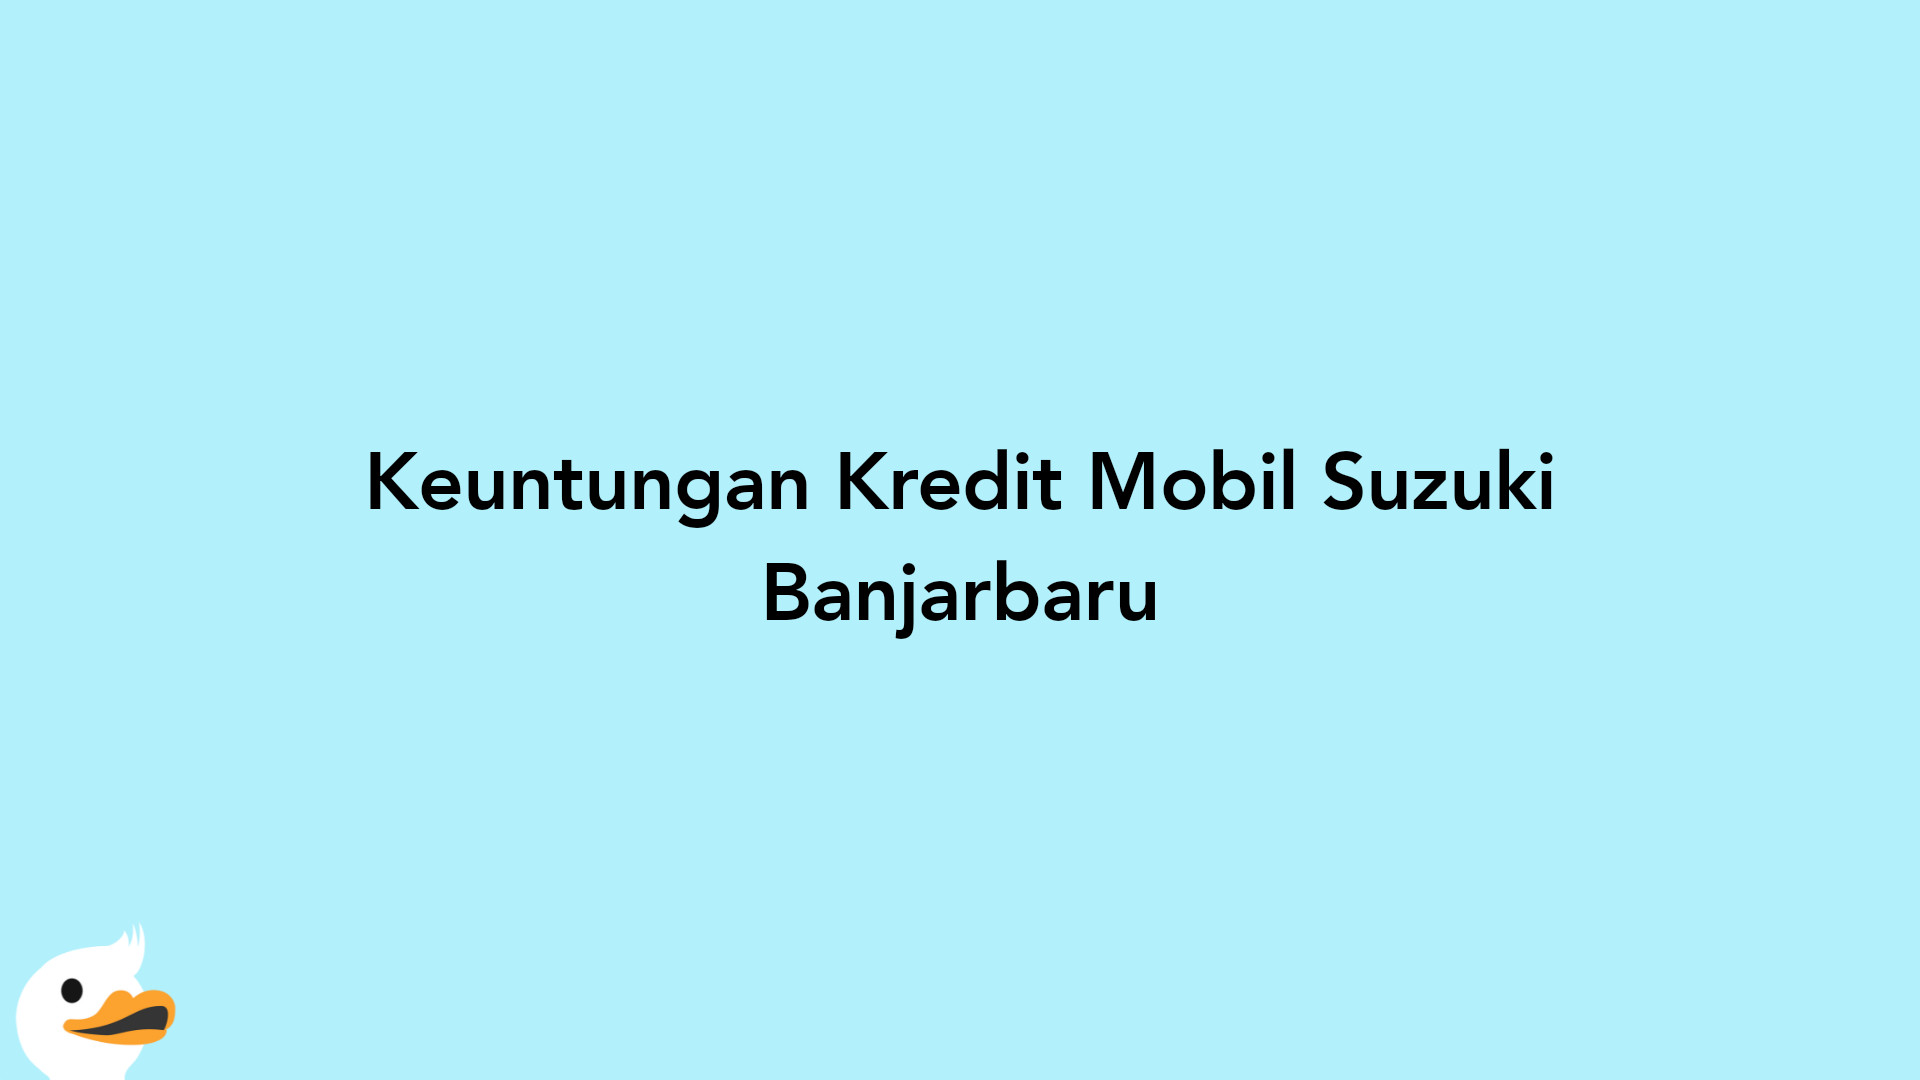 Keuntungan Kredit Mobil Suzuki Banjarbaru